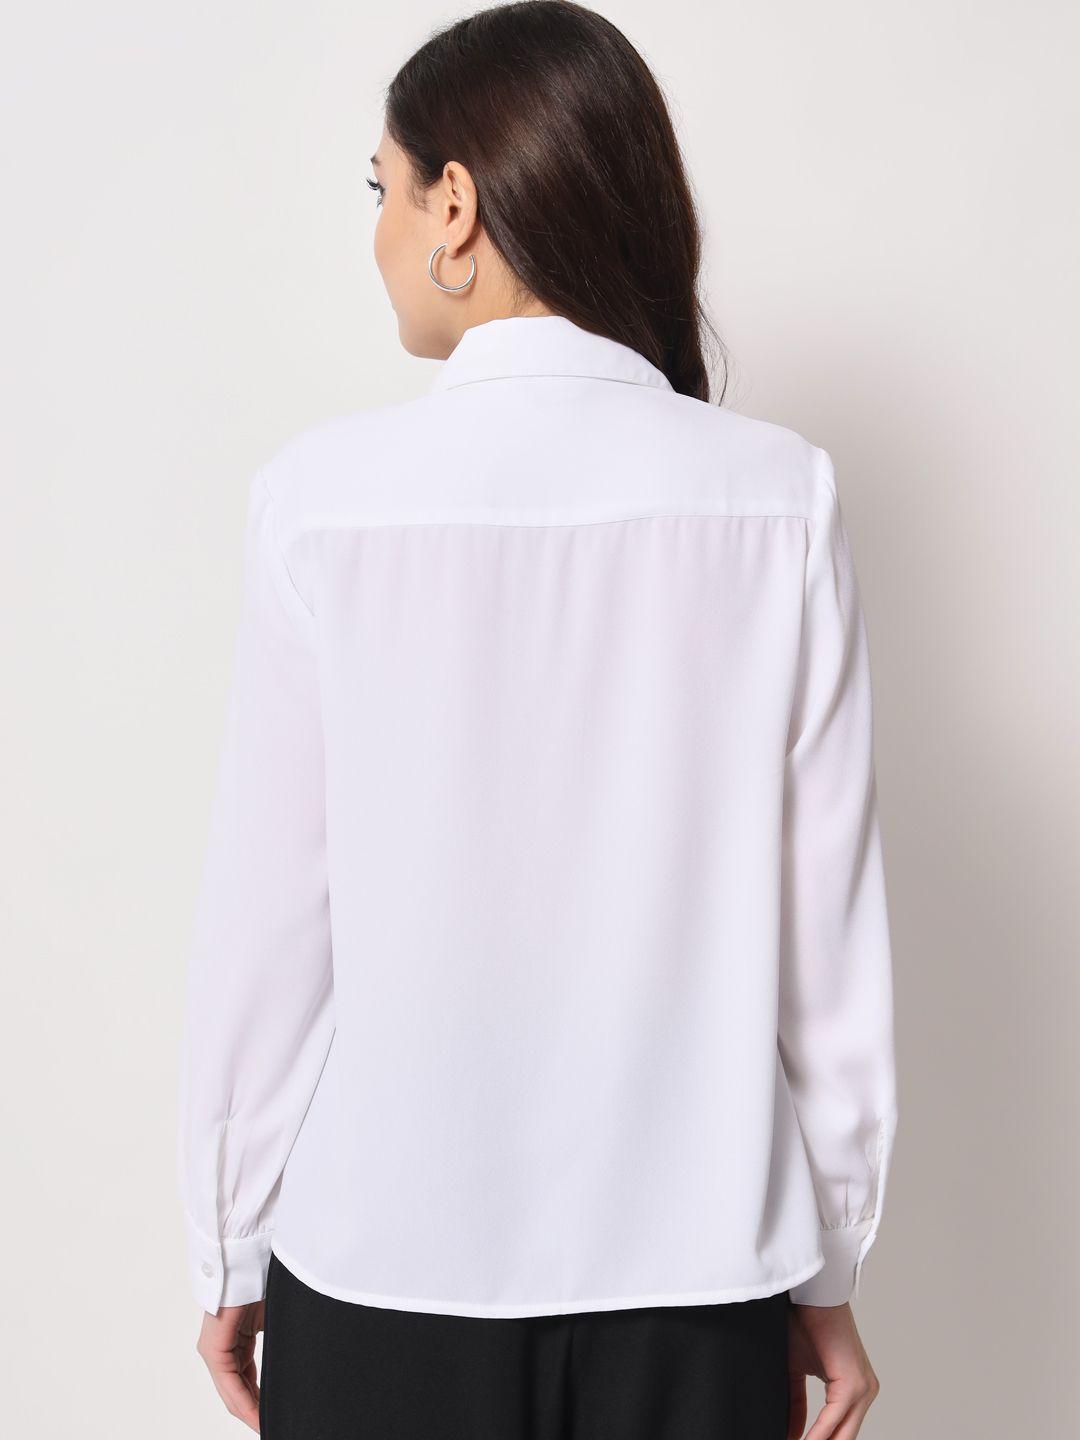 TRENDARREST Women's Polyester White Long Sleeve Shirt